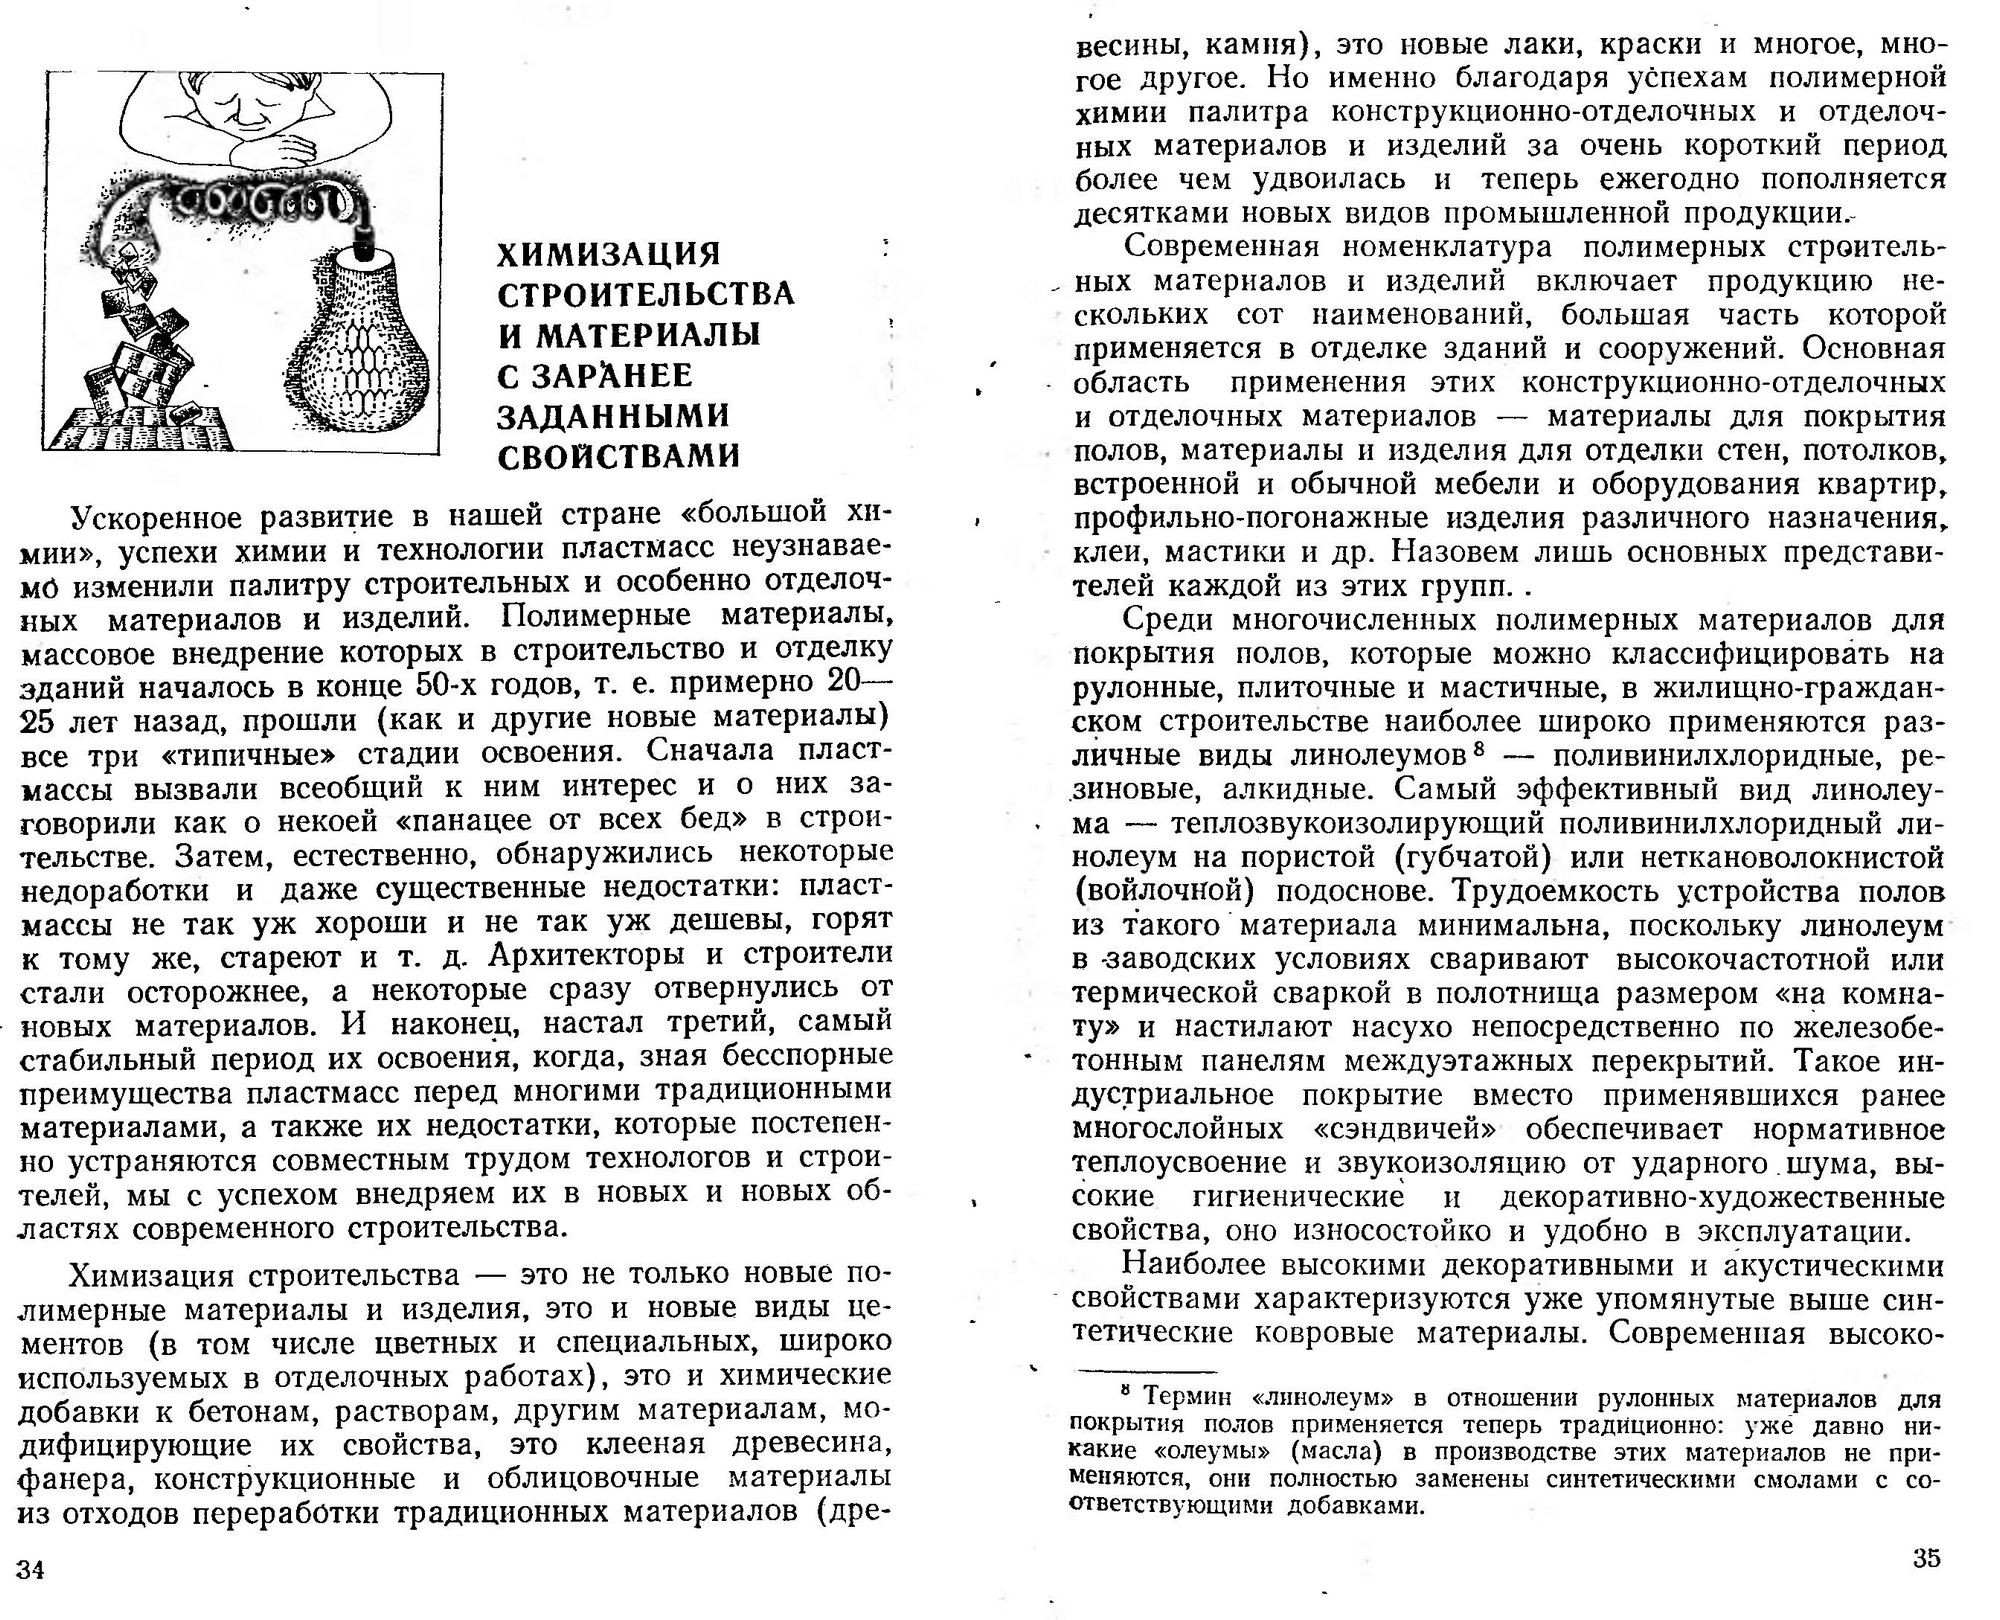 Новые отделочные материалы и качество строительства / Д. П. Айрапетов.  — Москва : Знание, 1982